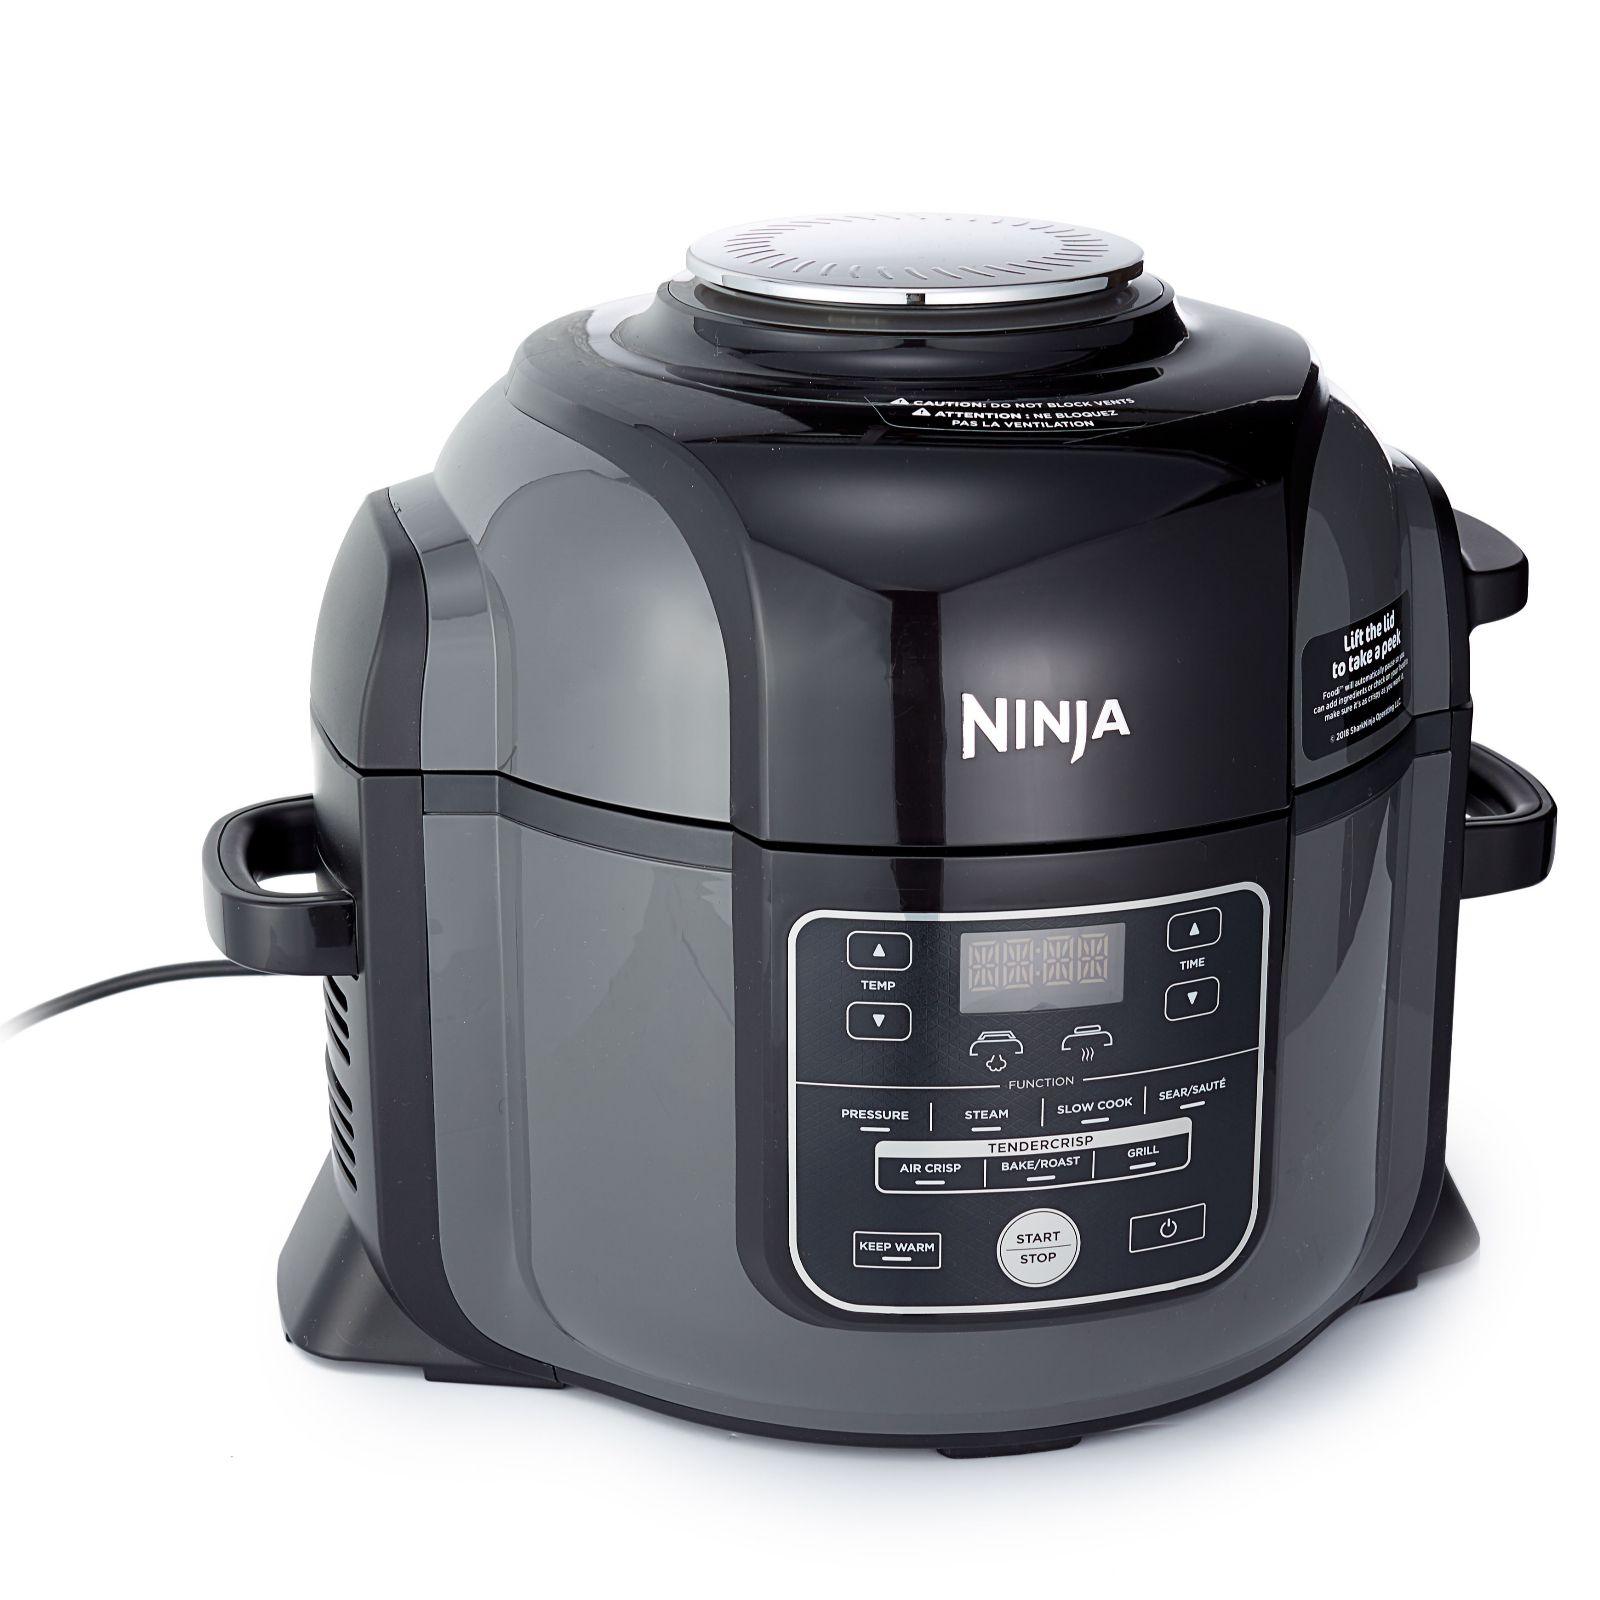 Ninja Foodi 7 1 Multi Cooker Op300uk Qvc Uk